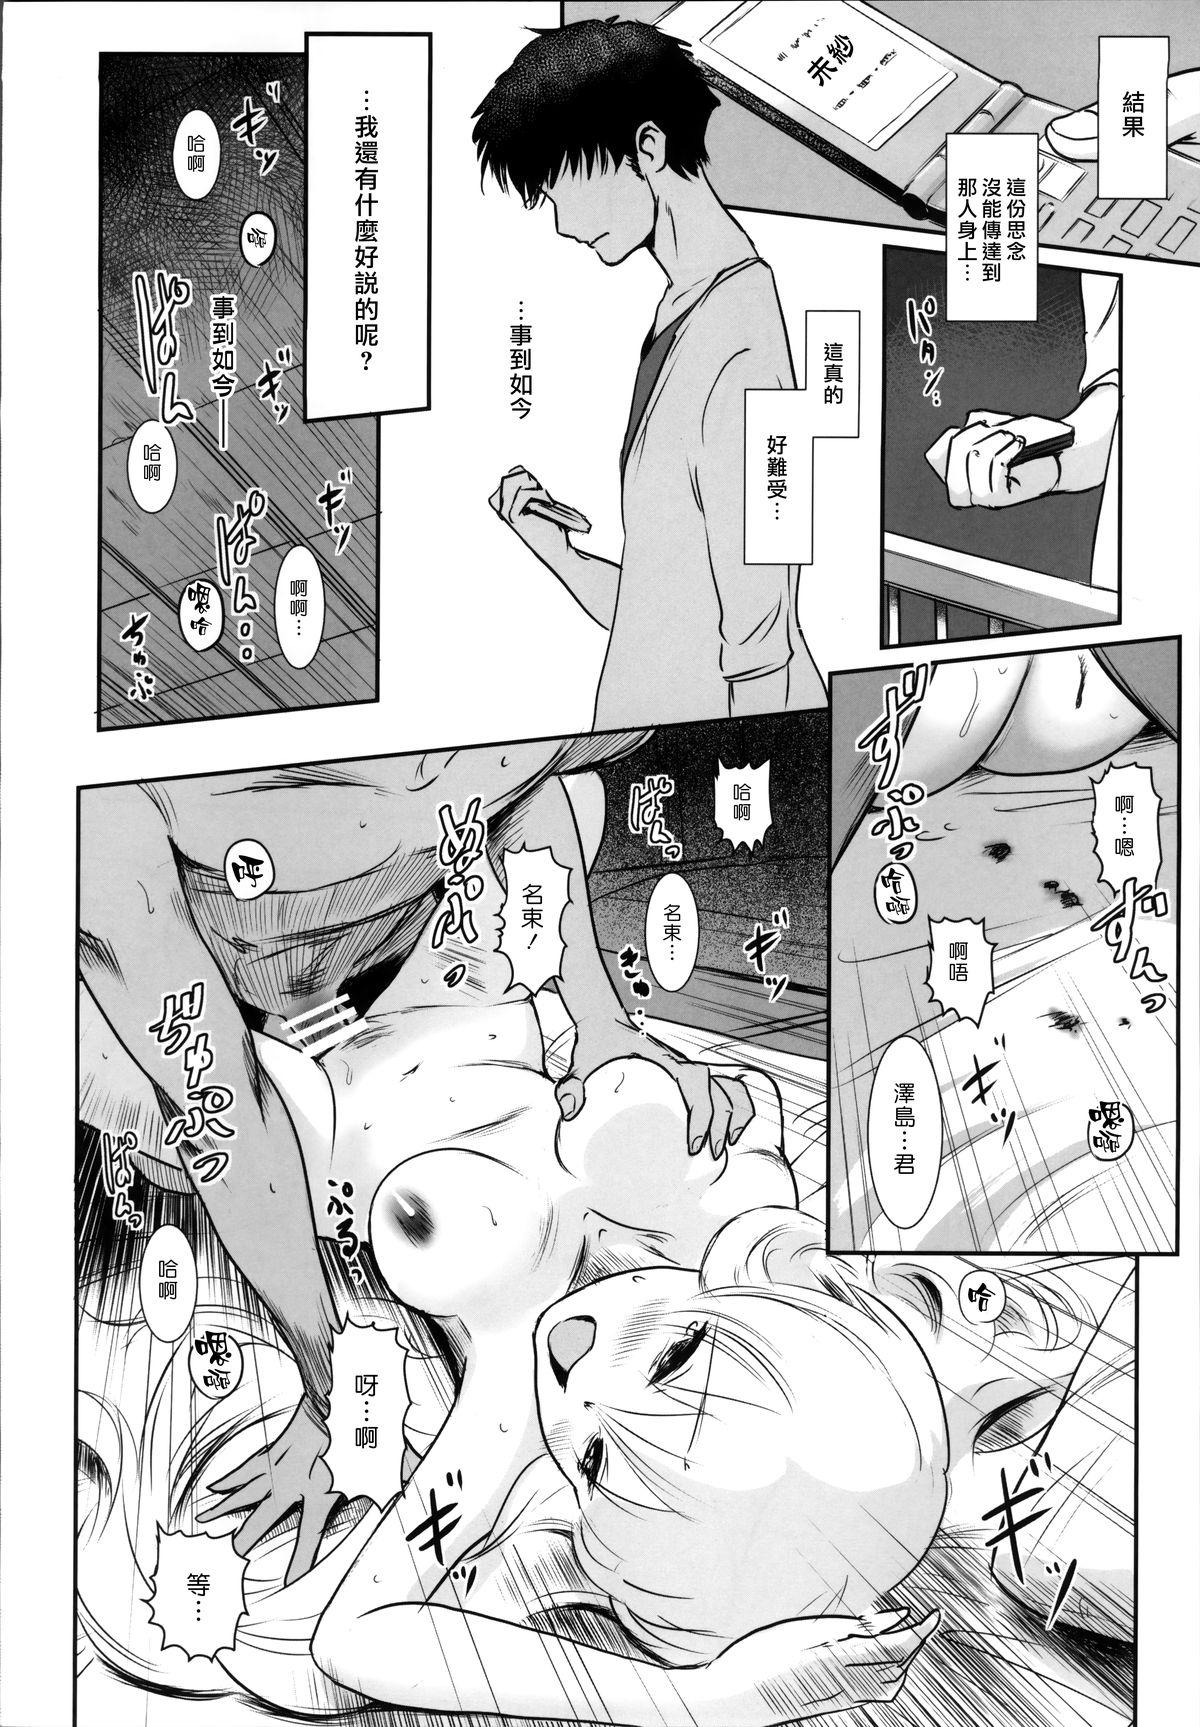 Story of the 'N' Situation - Situation#2 Kokoro Utsuri 27